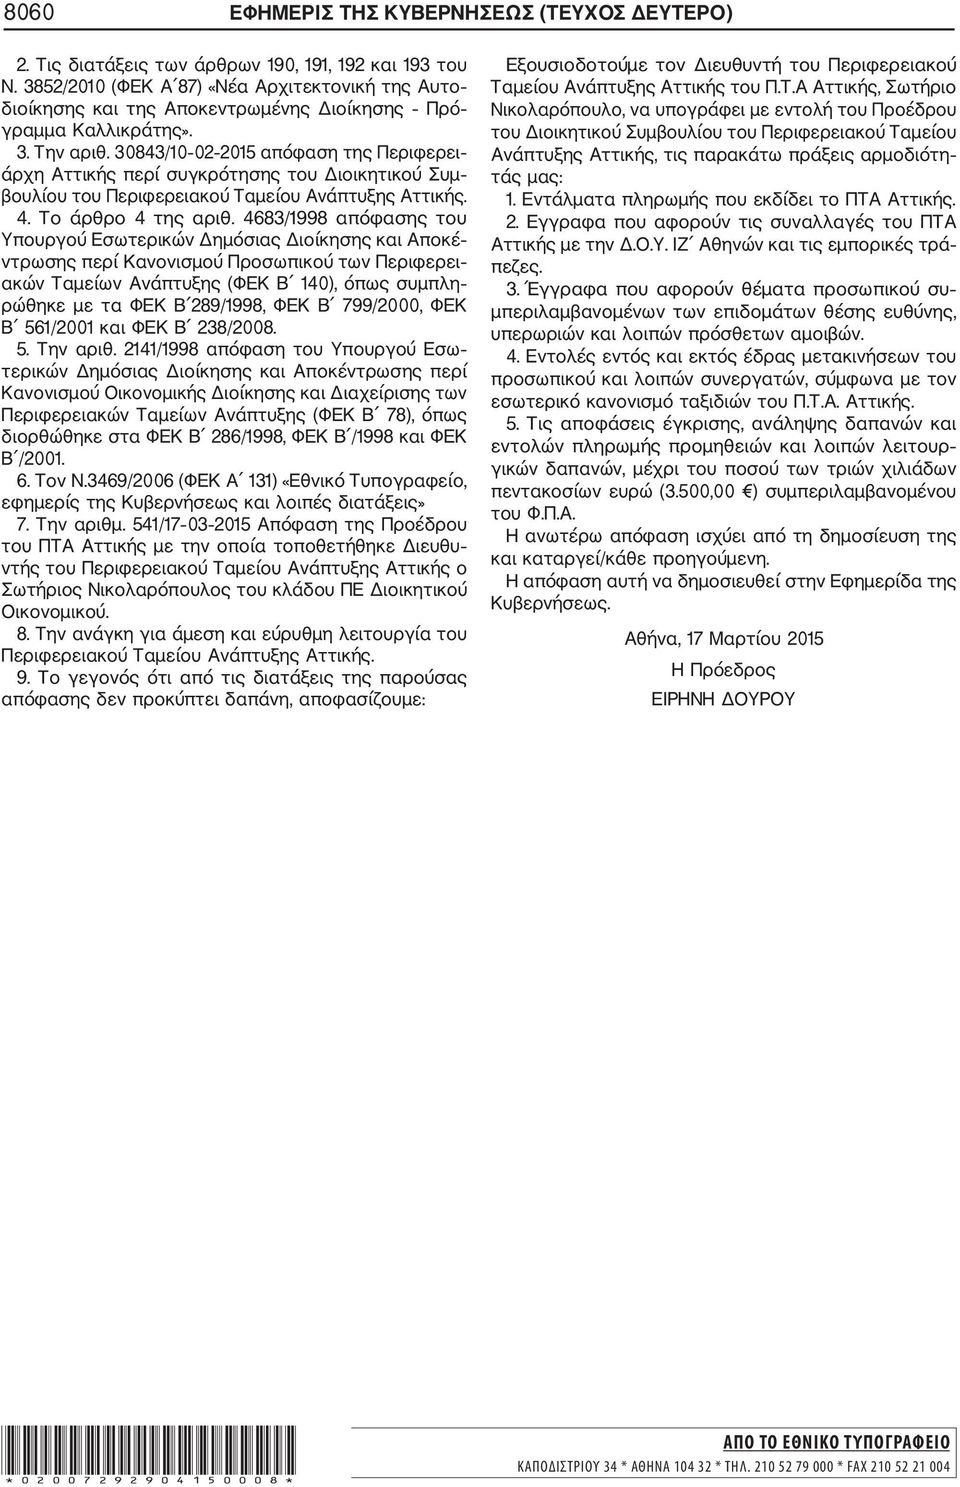 30843/10 02 2015 απόφαση της Περιφερει άρχη Αττικής περί συγκρότησης του Διοικητικού Συμ βουλίου του Περιφερειακού Ταμείου Ανάπτυξης Αττικής. 4. Το άρθρο 4 της αριθ.